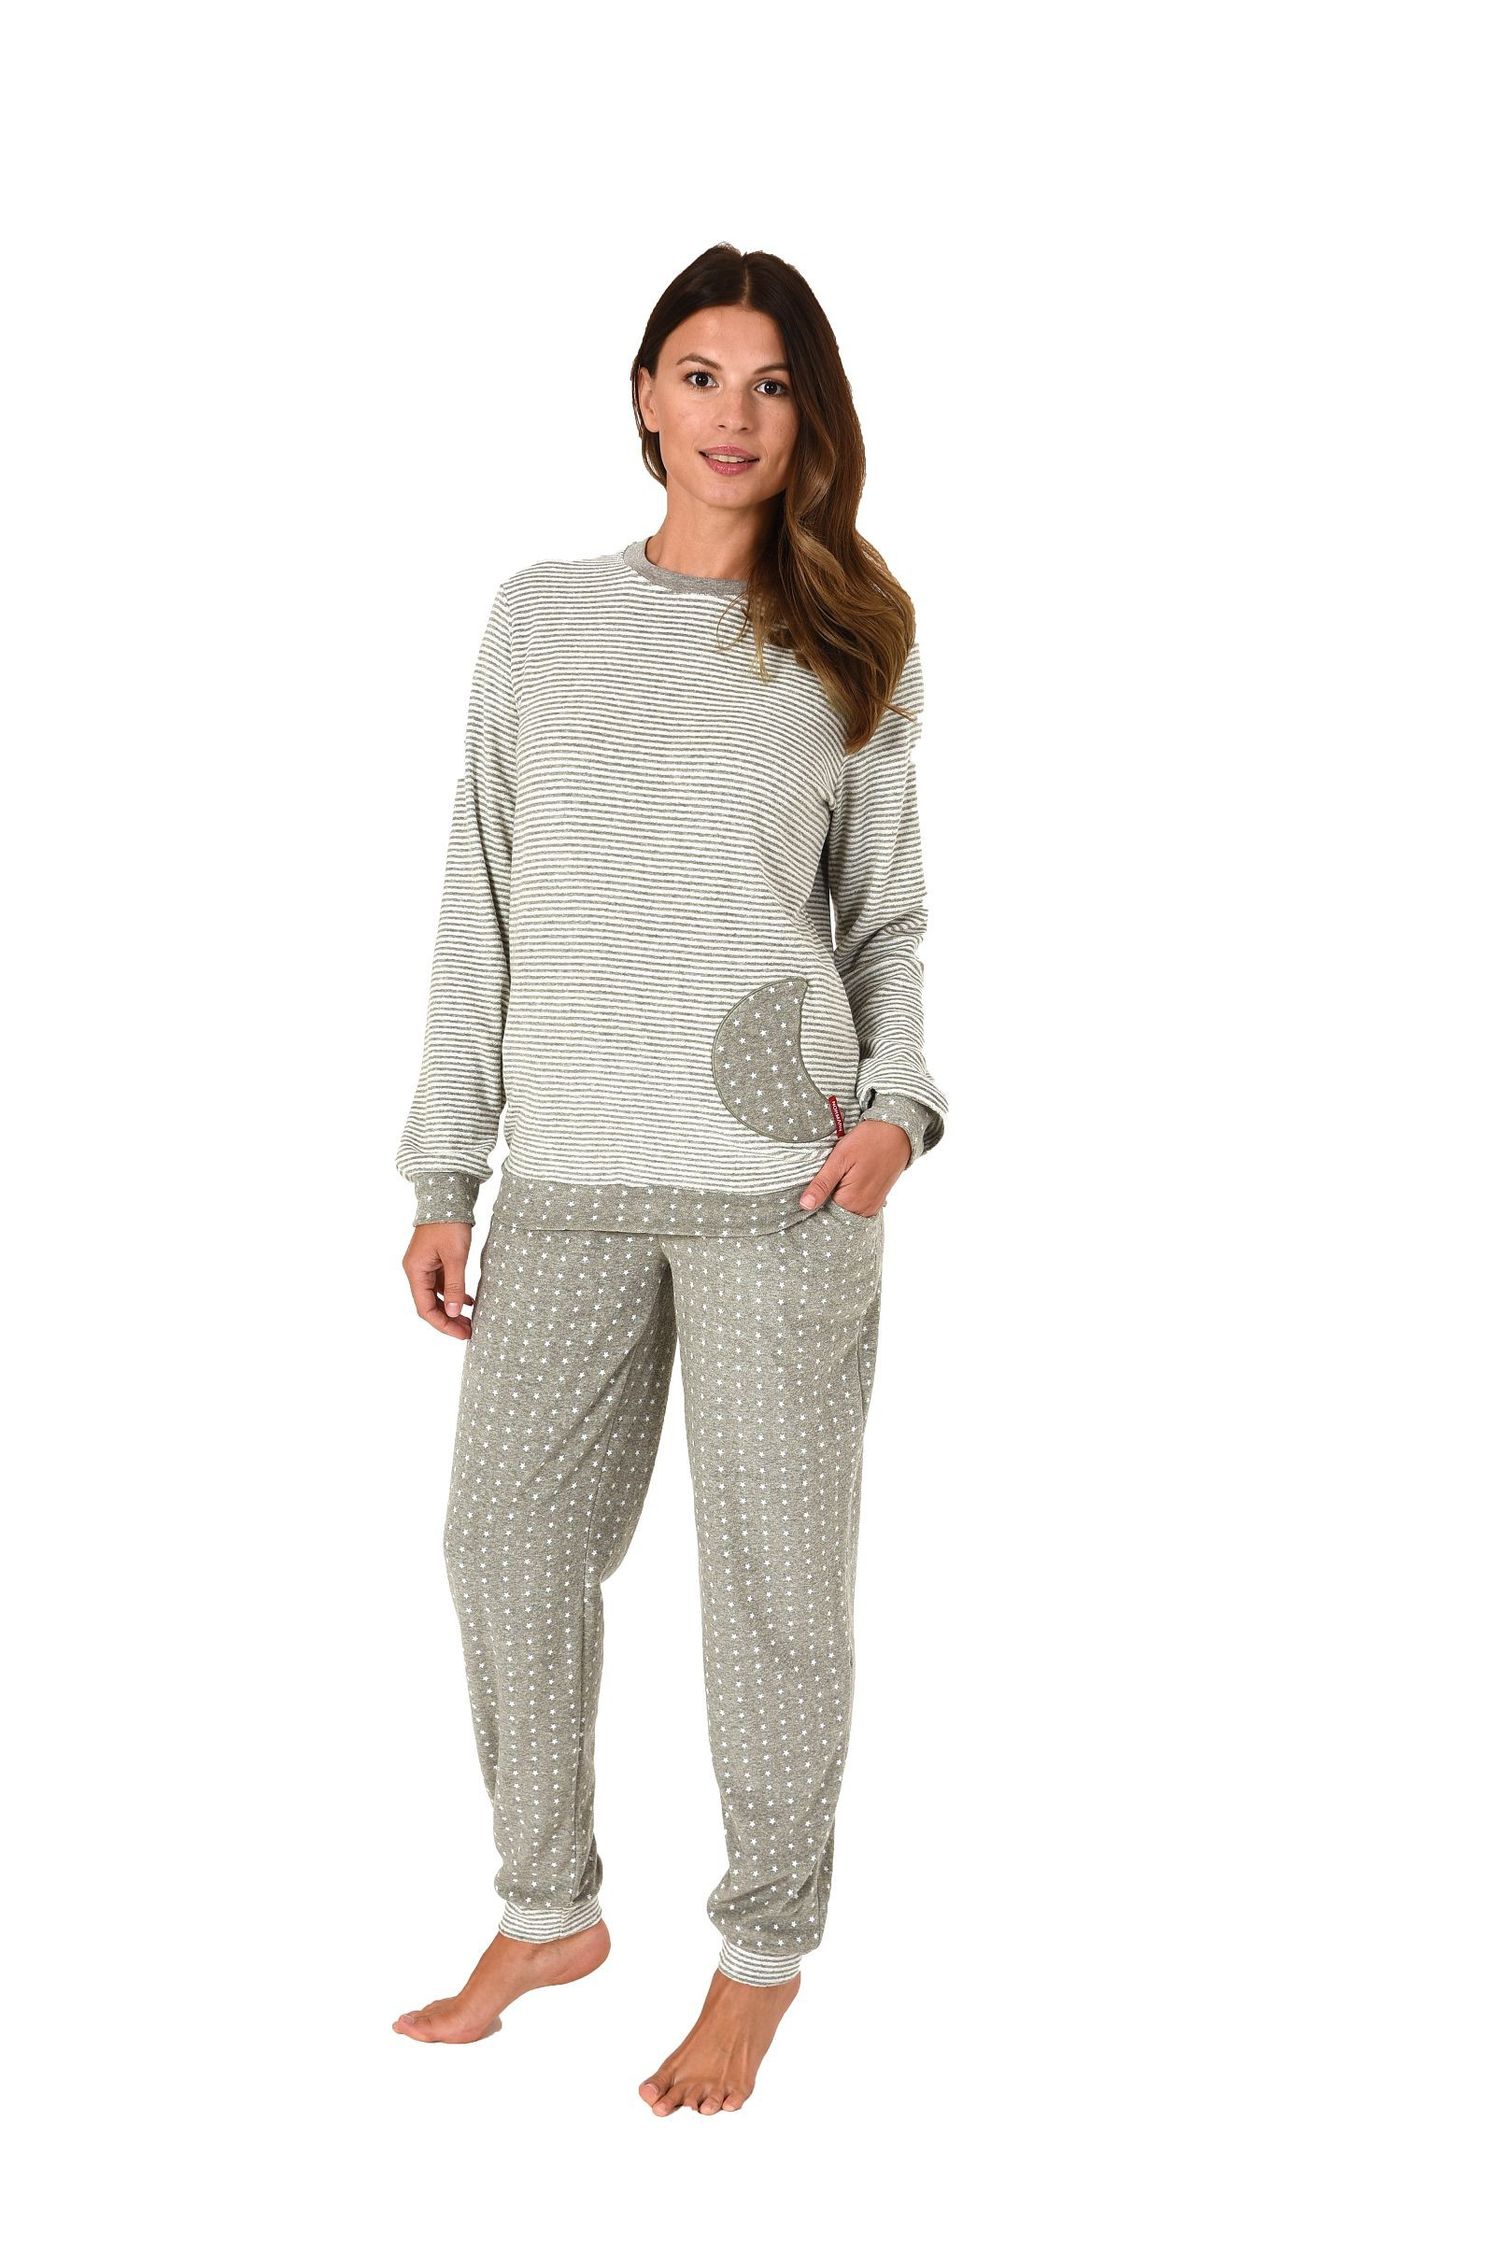 Damen Frottee Pyjama mit Bündchen Sterne Tupfendesign – auch in Übergrössen bis 60/62